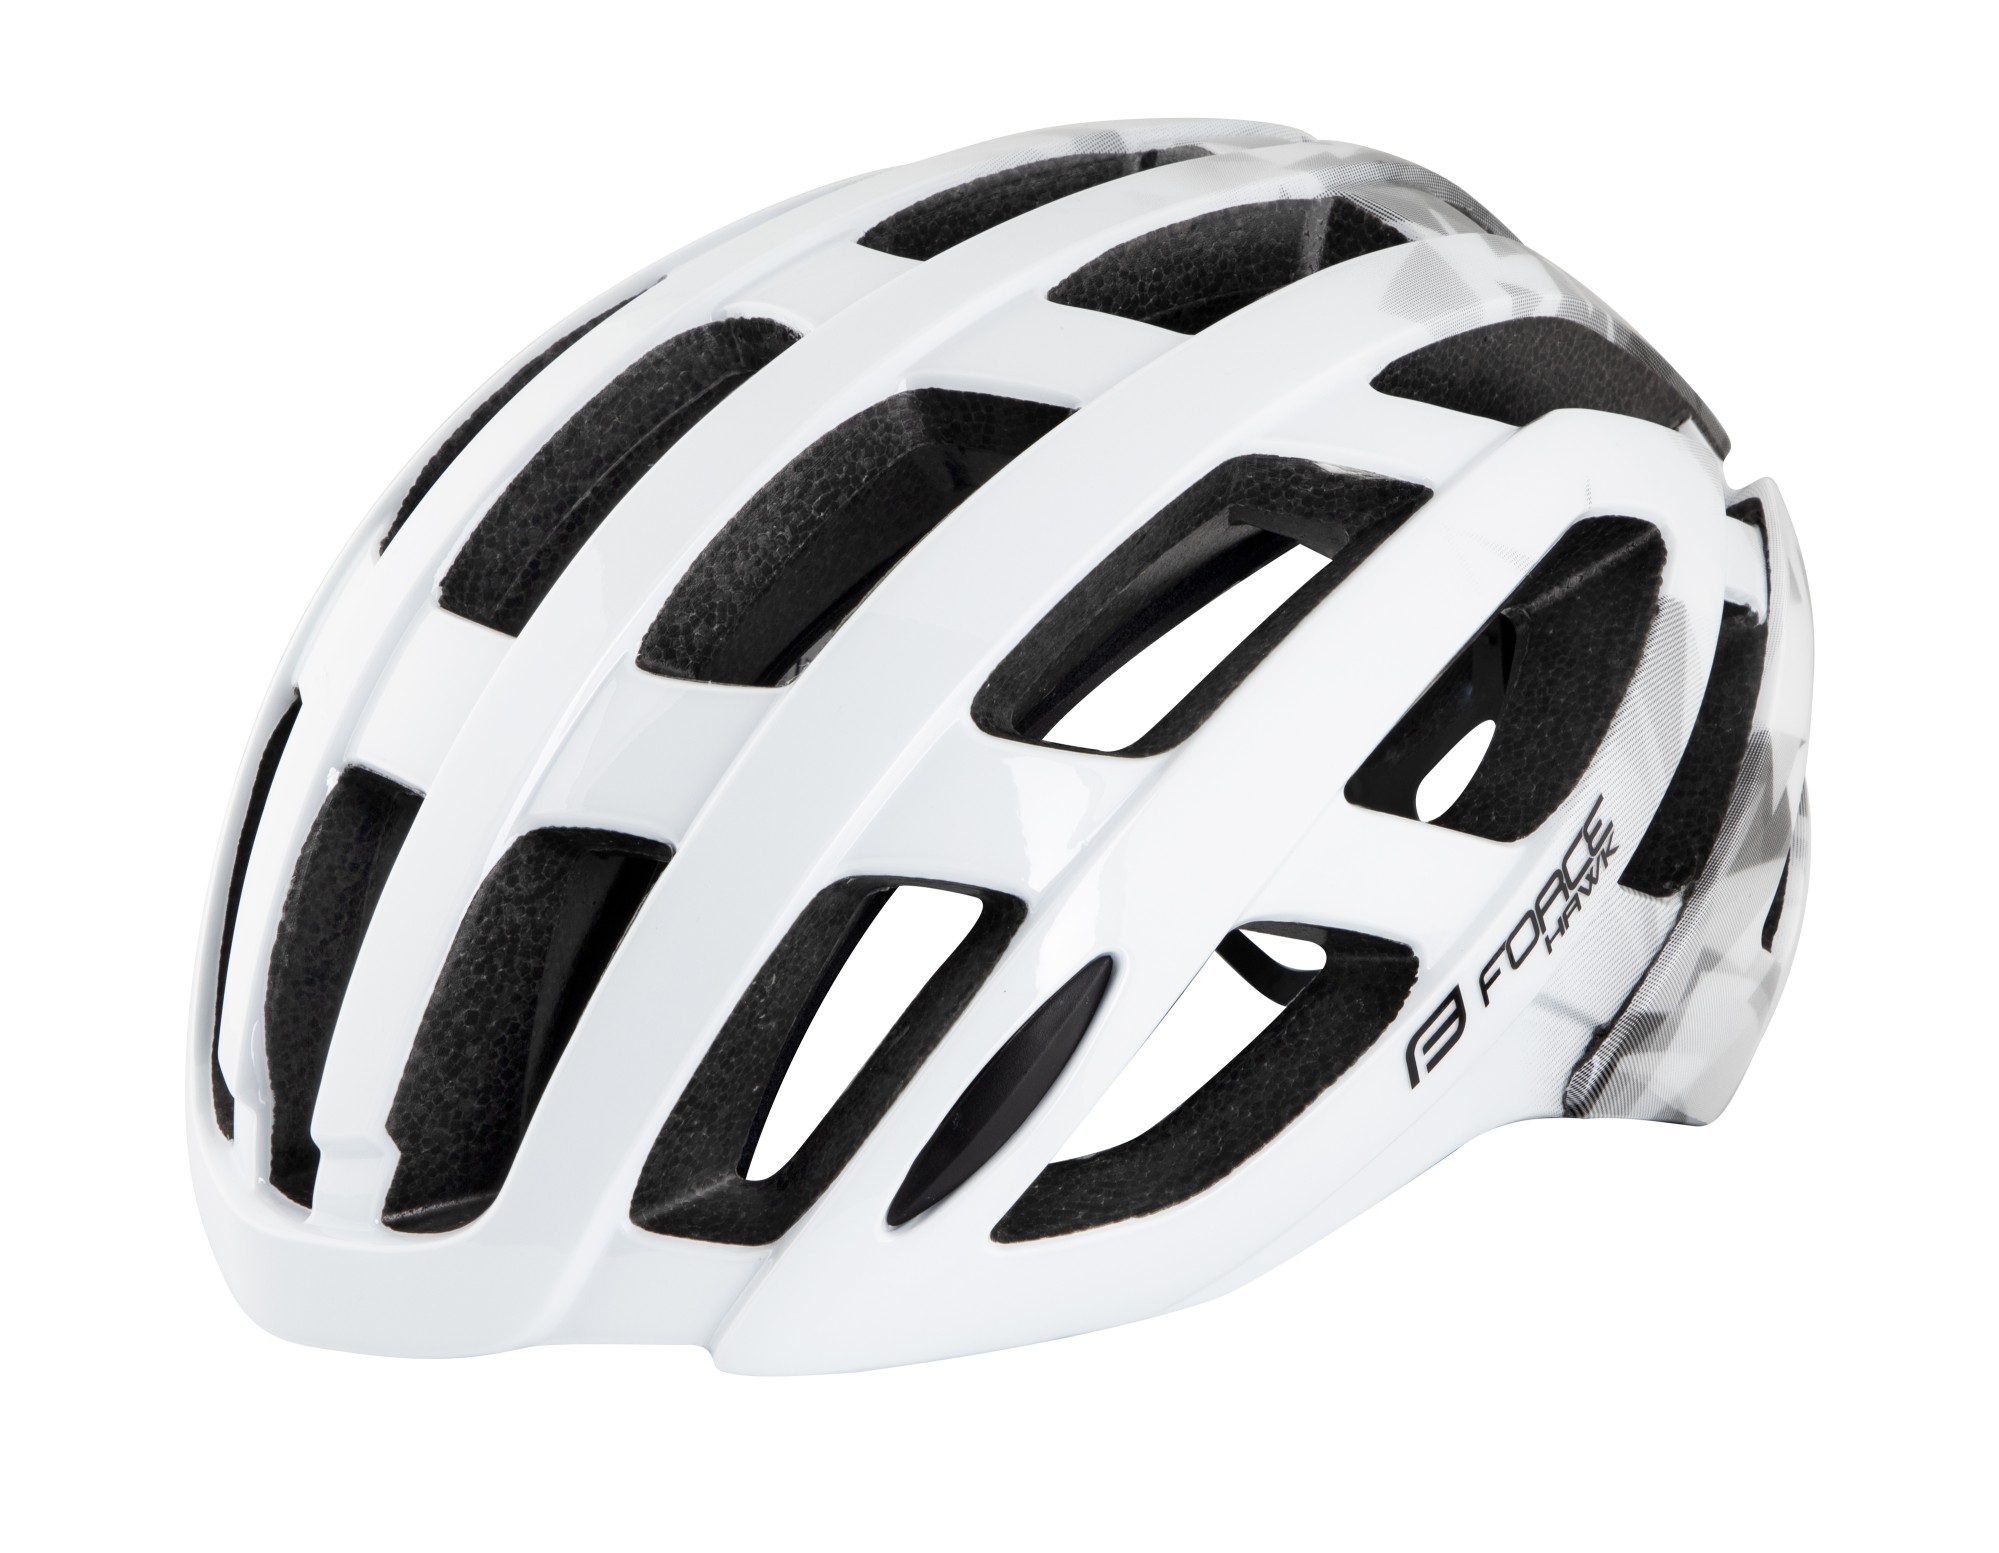 Force Hawk Bicycle Helmet White / Black